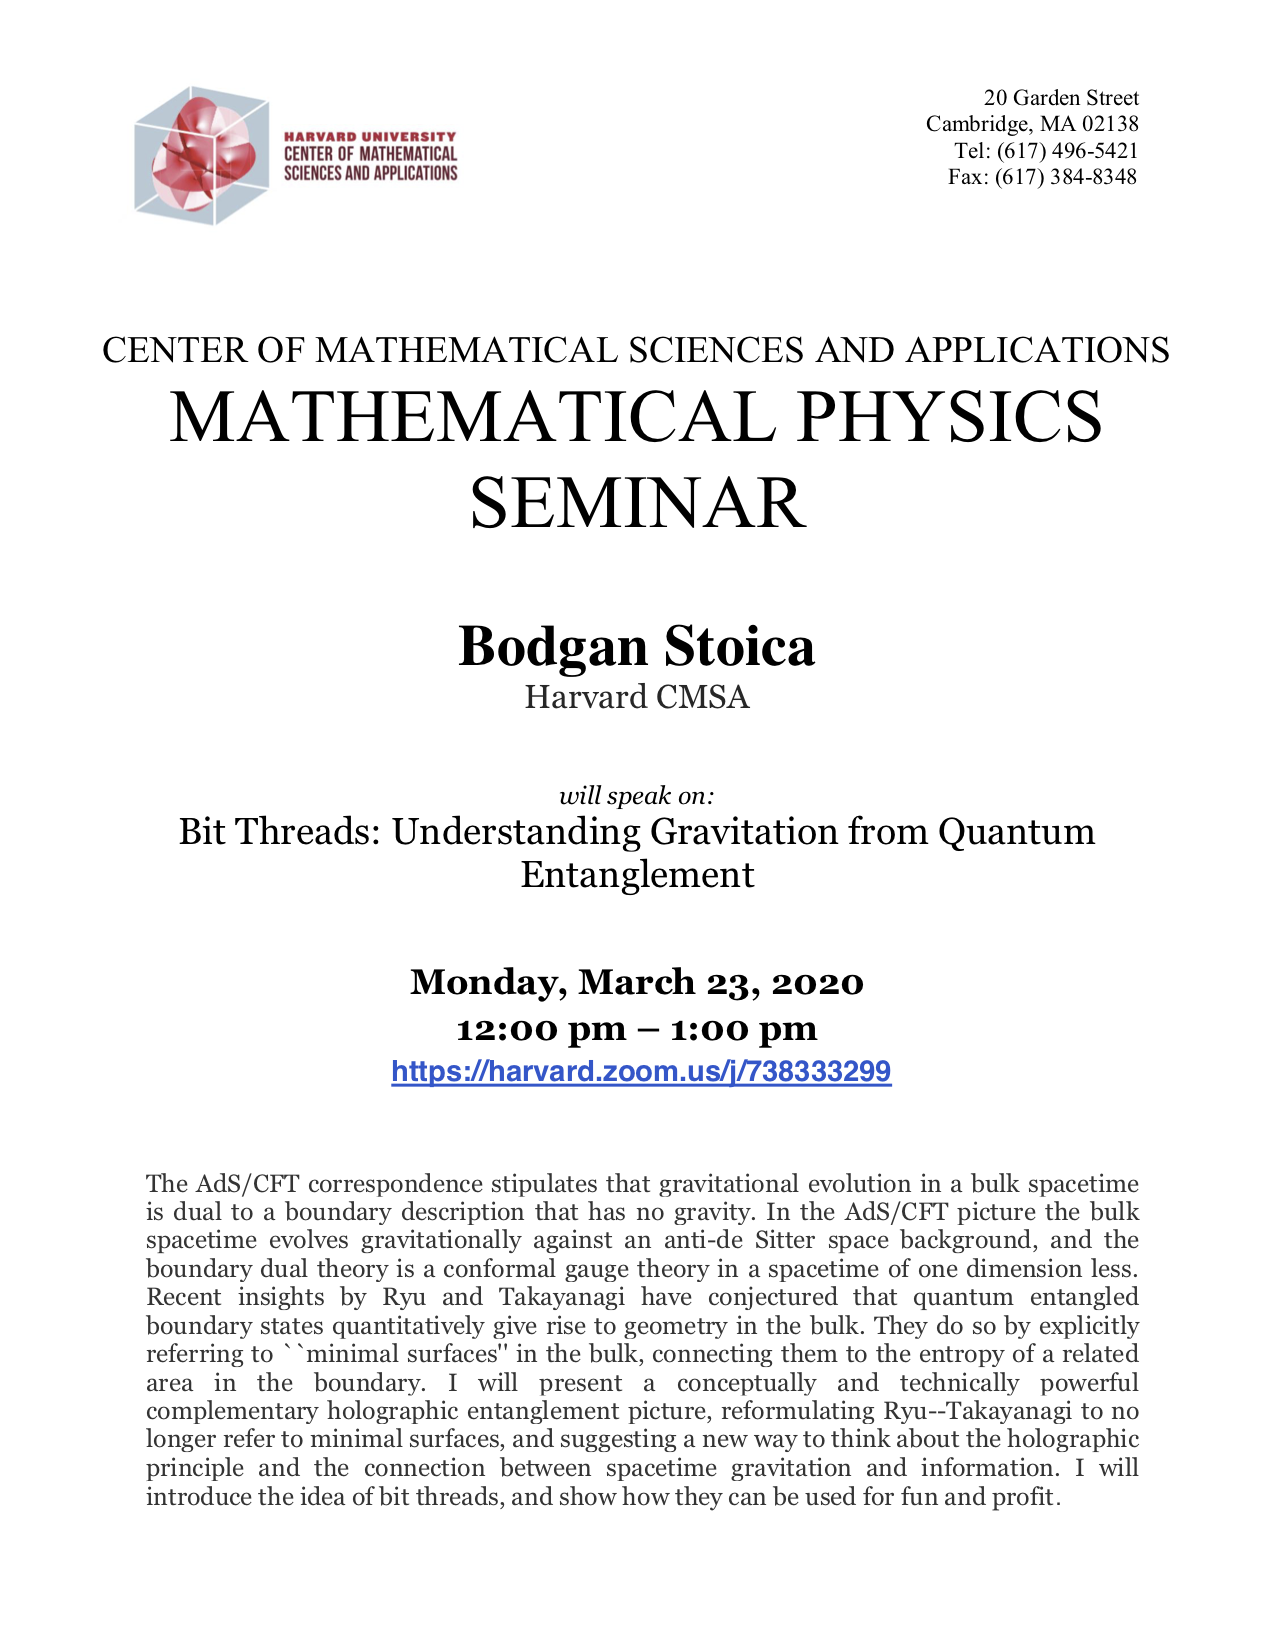 3/23/2020 Math Physics Seminar